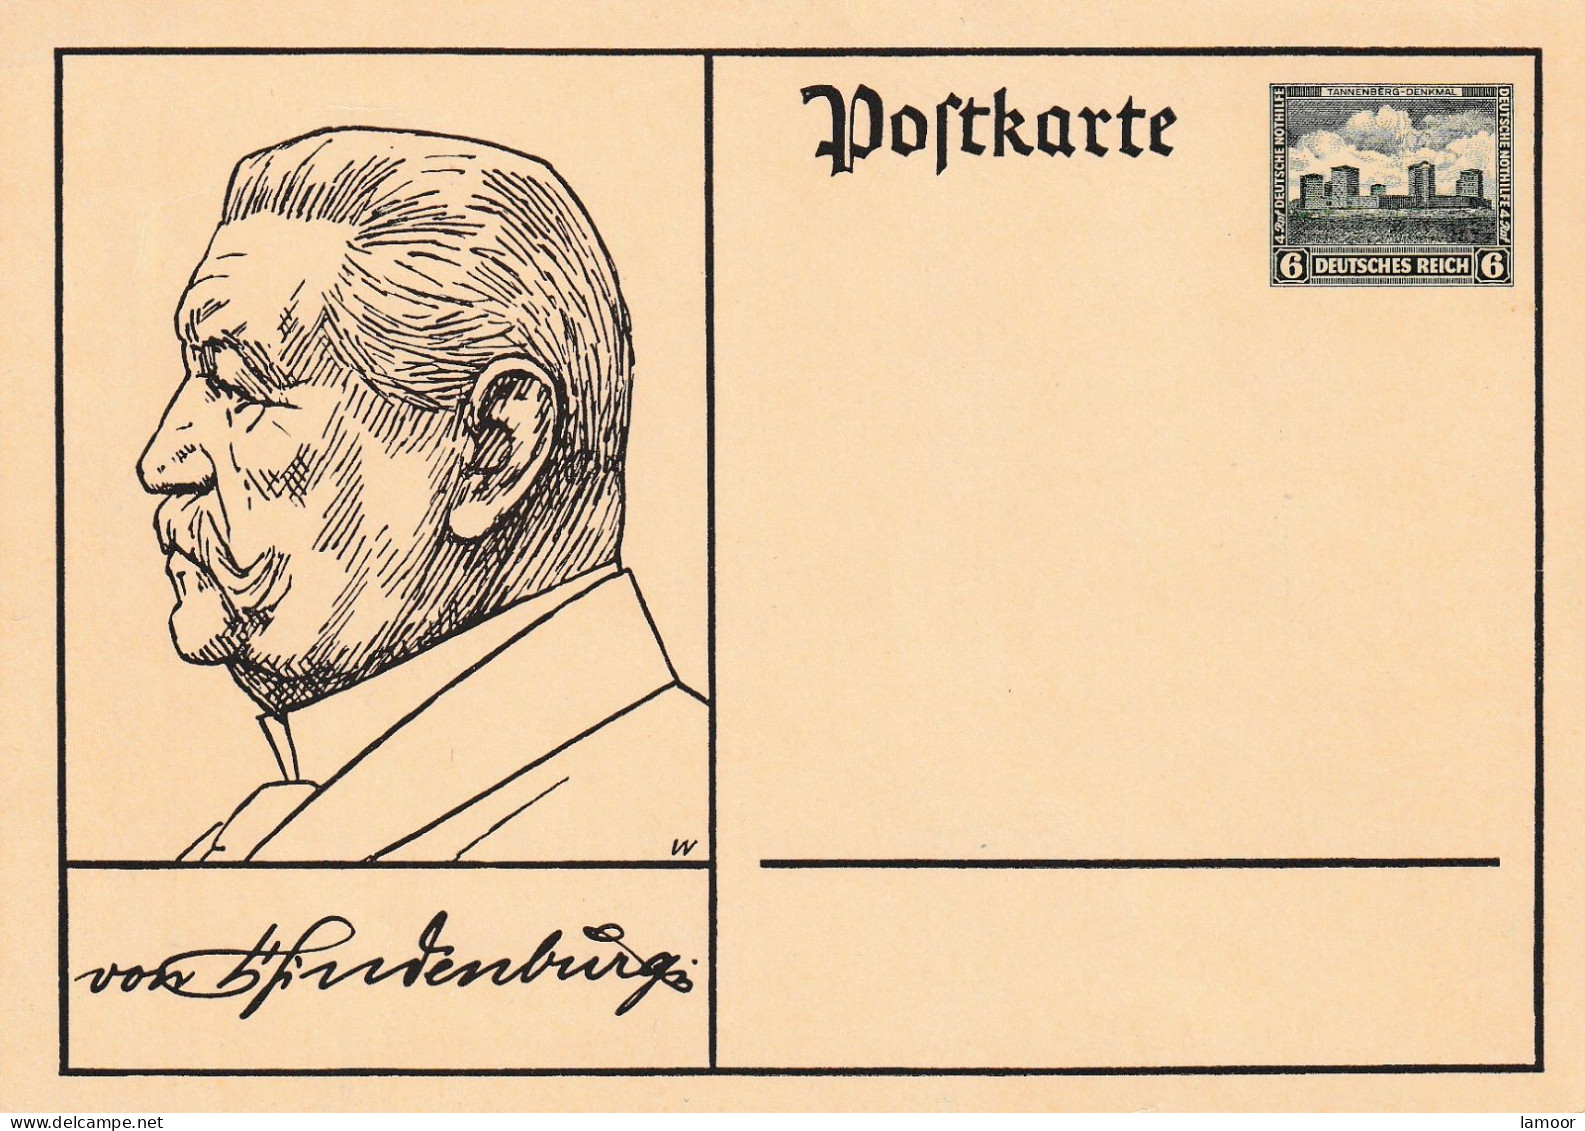 Deutsche Reich Postkarte Postfresch Ungelaufene Adolf Hitler - Sammlungen & Sammellose